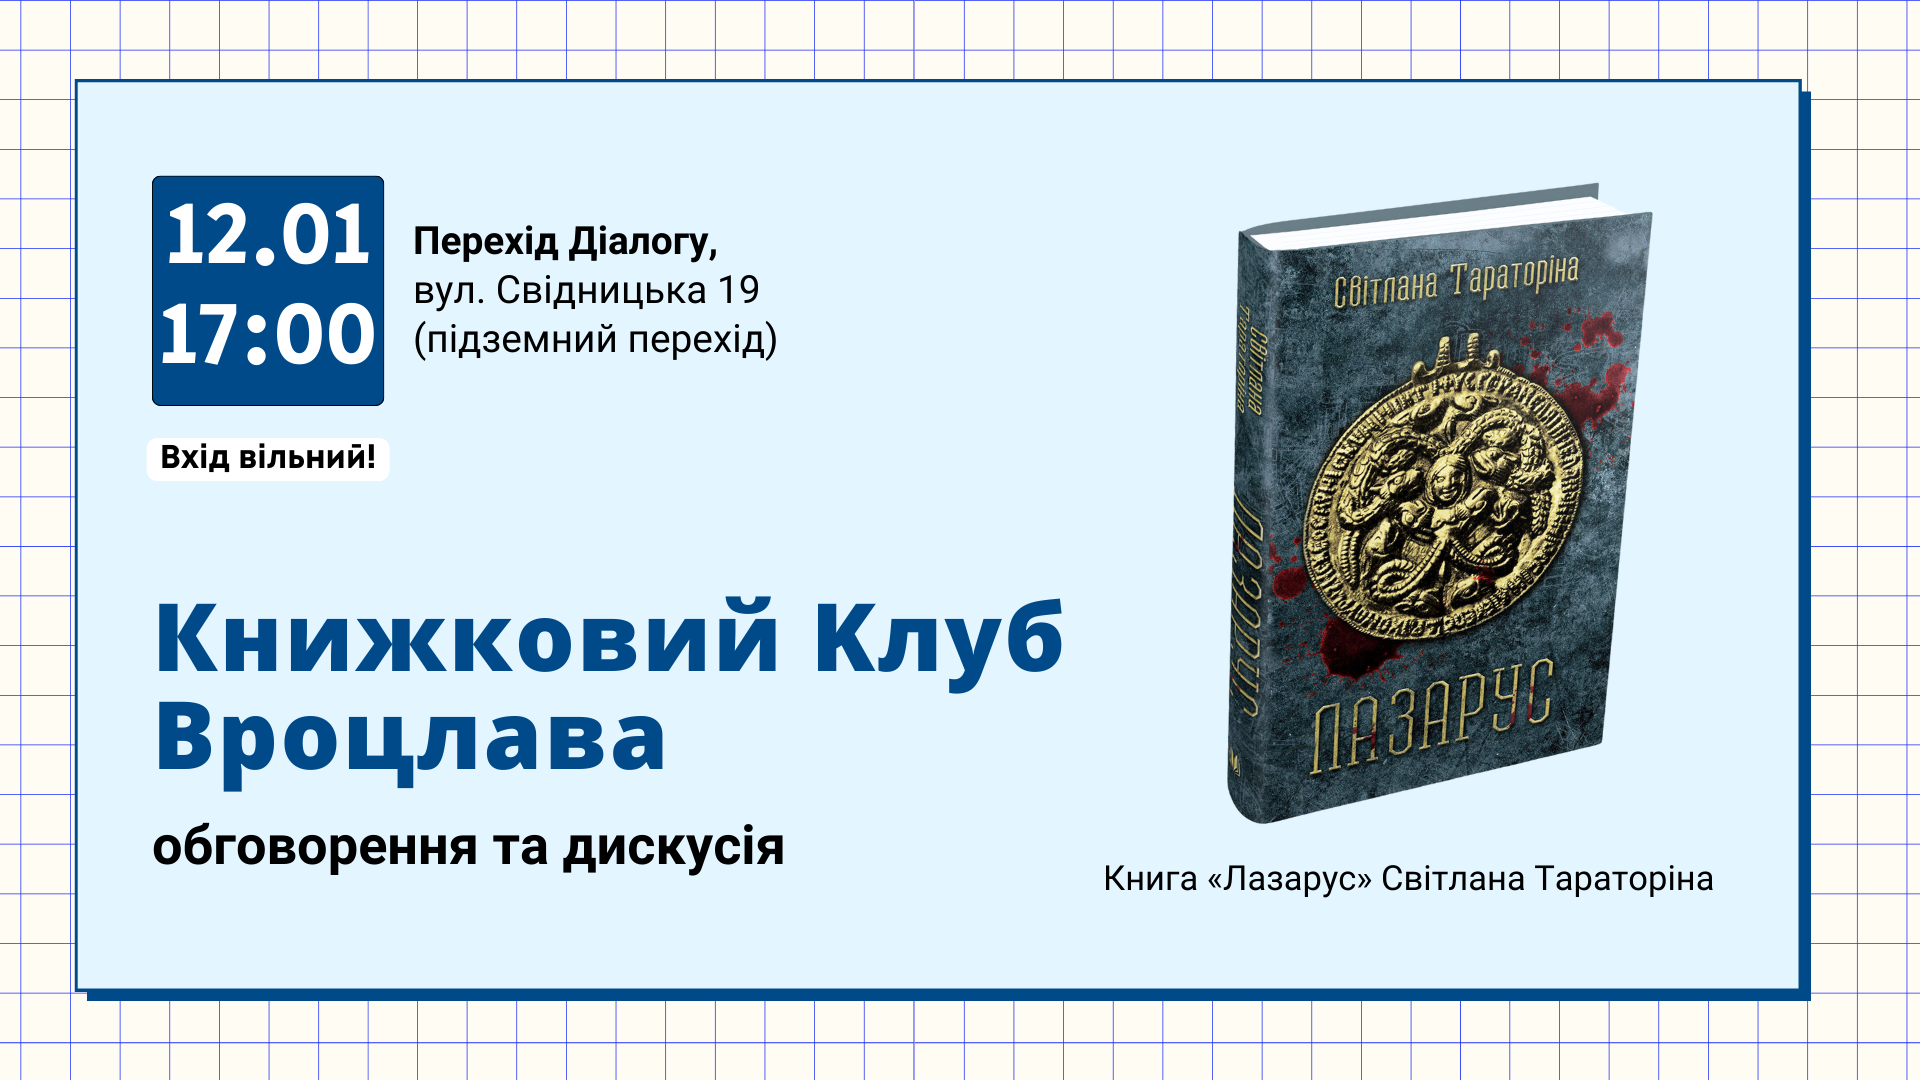 Ukraiński klub książki w Przejściu Dialogu! Okładka książki "Lazarus" Svitłana Taratorina